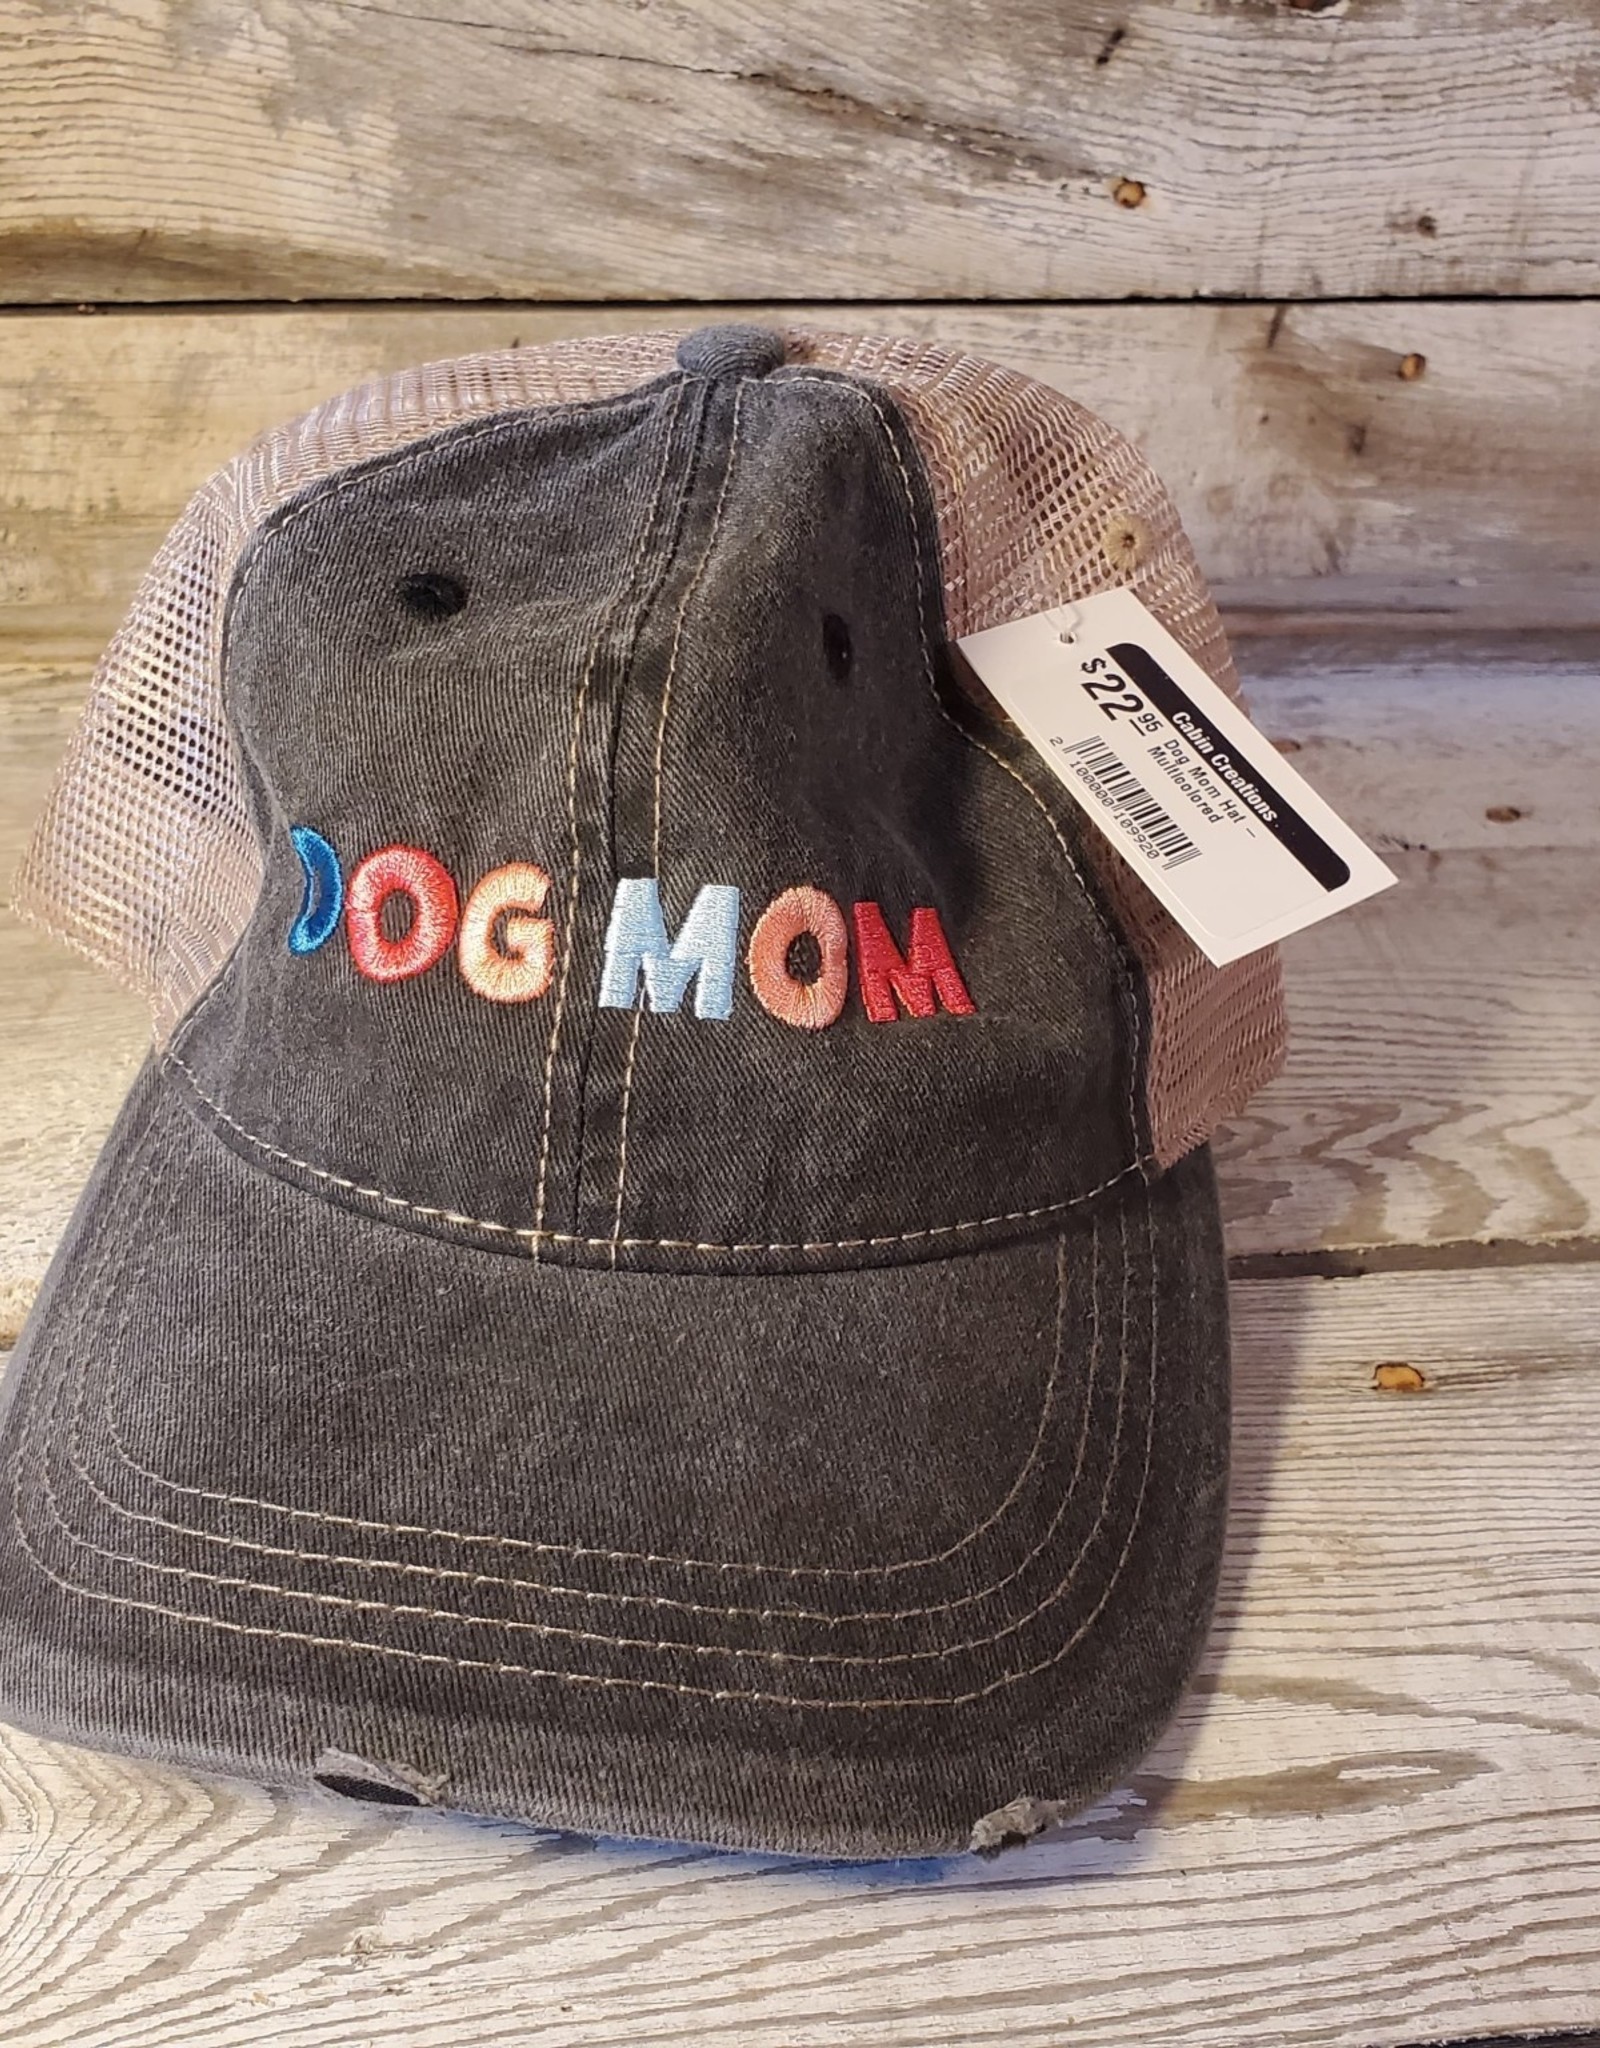 Katydid Dog Mom Hat - Multicolored